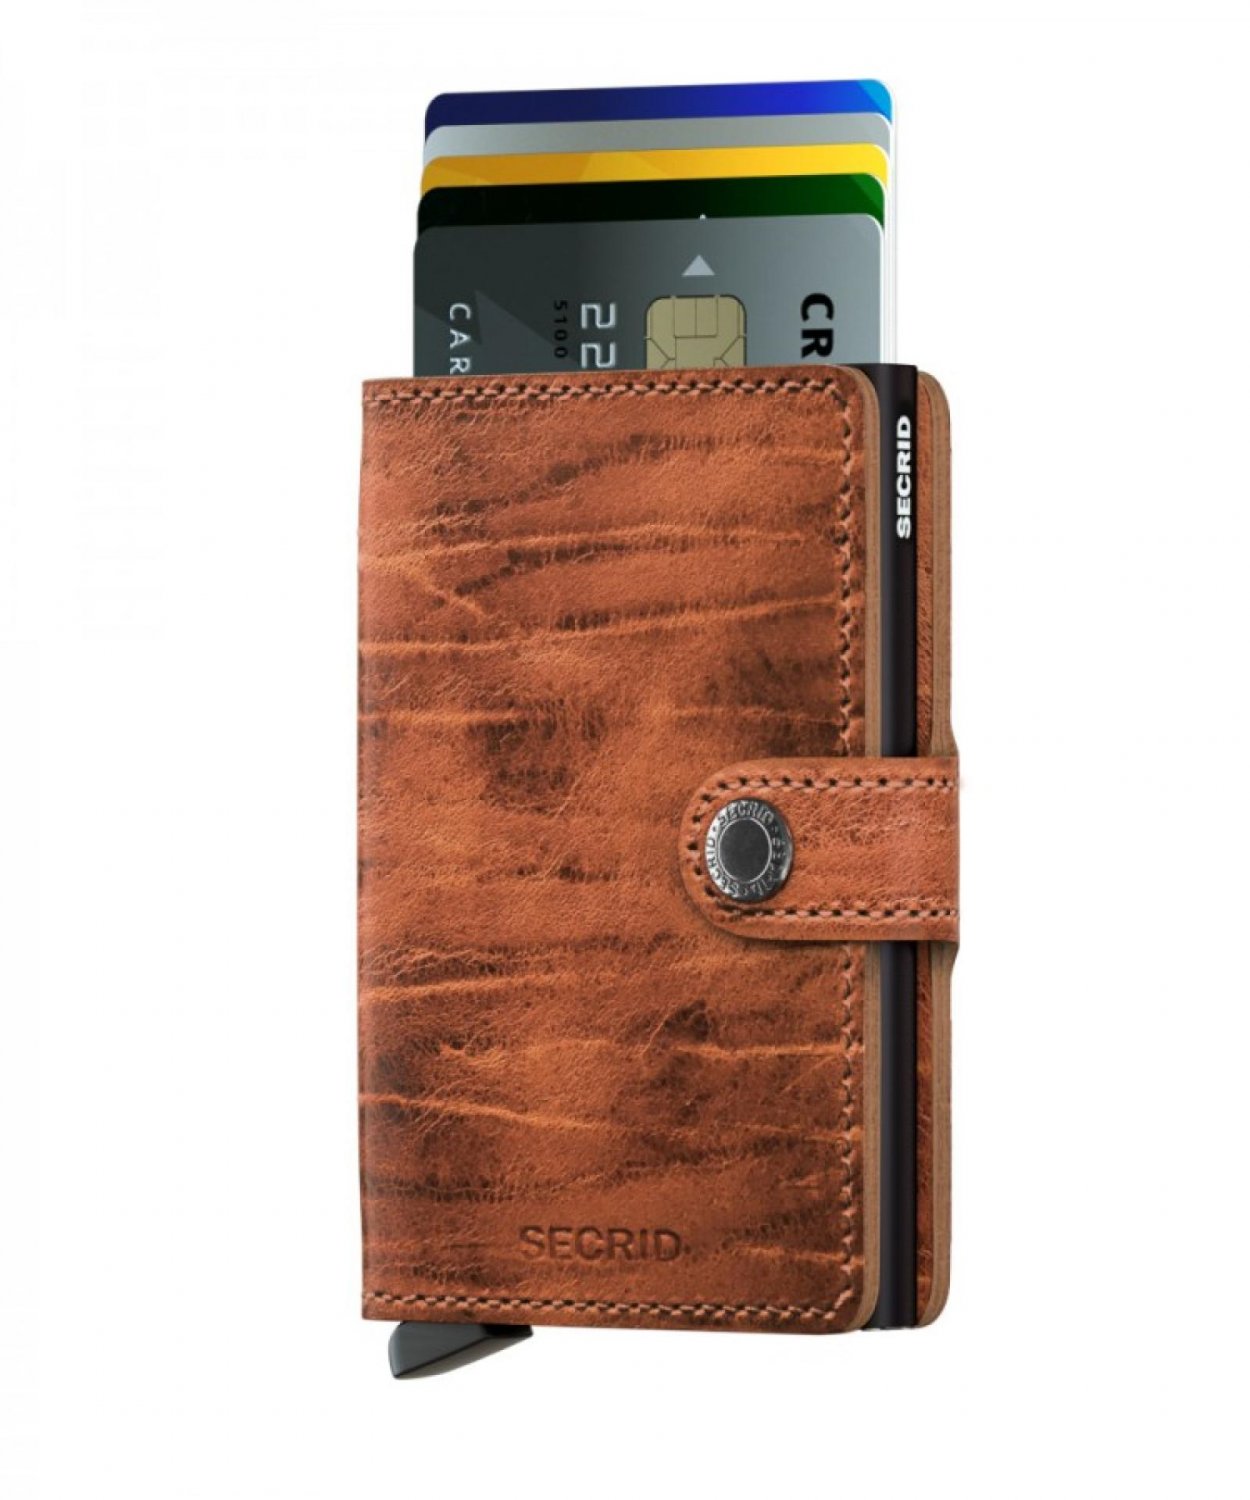 Kožená peněženka Secrid v hnědé barvě s jemným vzorem